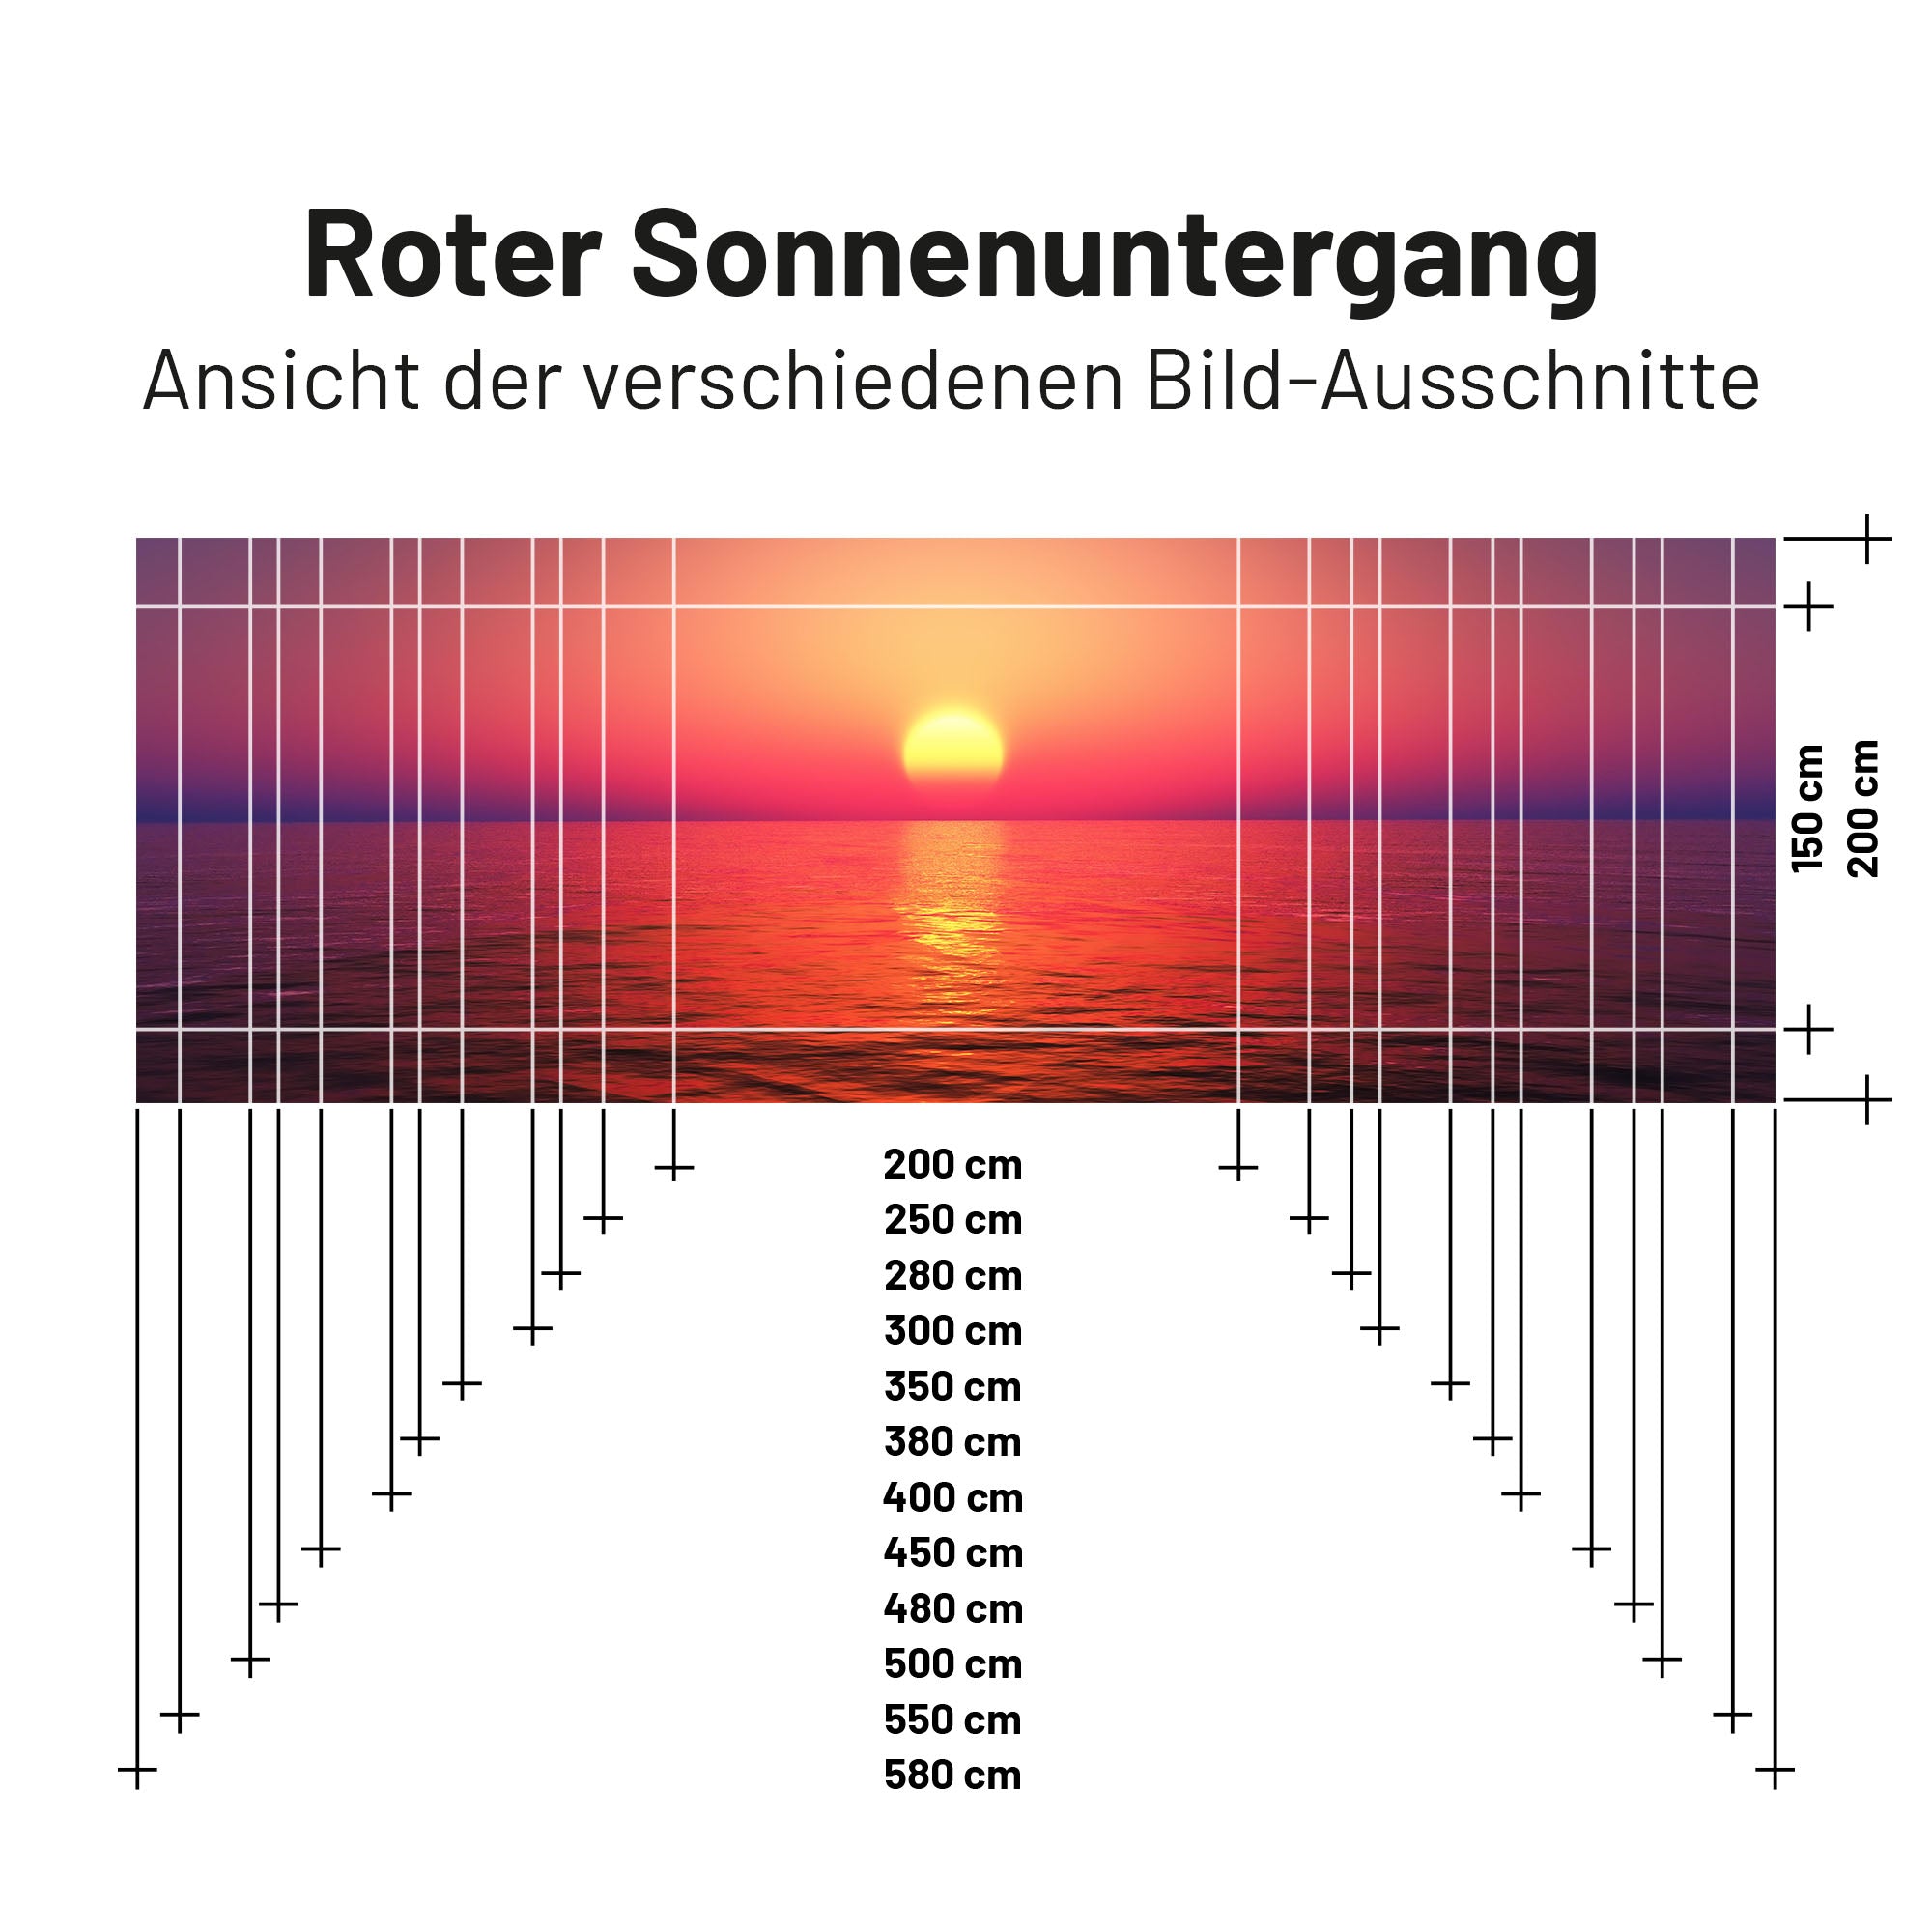 Textil Sonnensegel SUNRISE 200cm Hoch